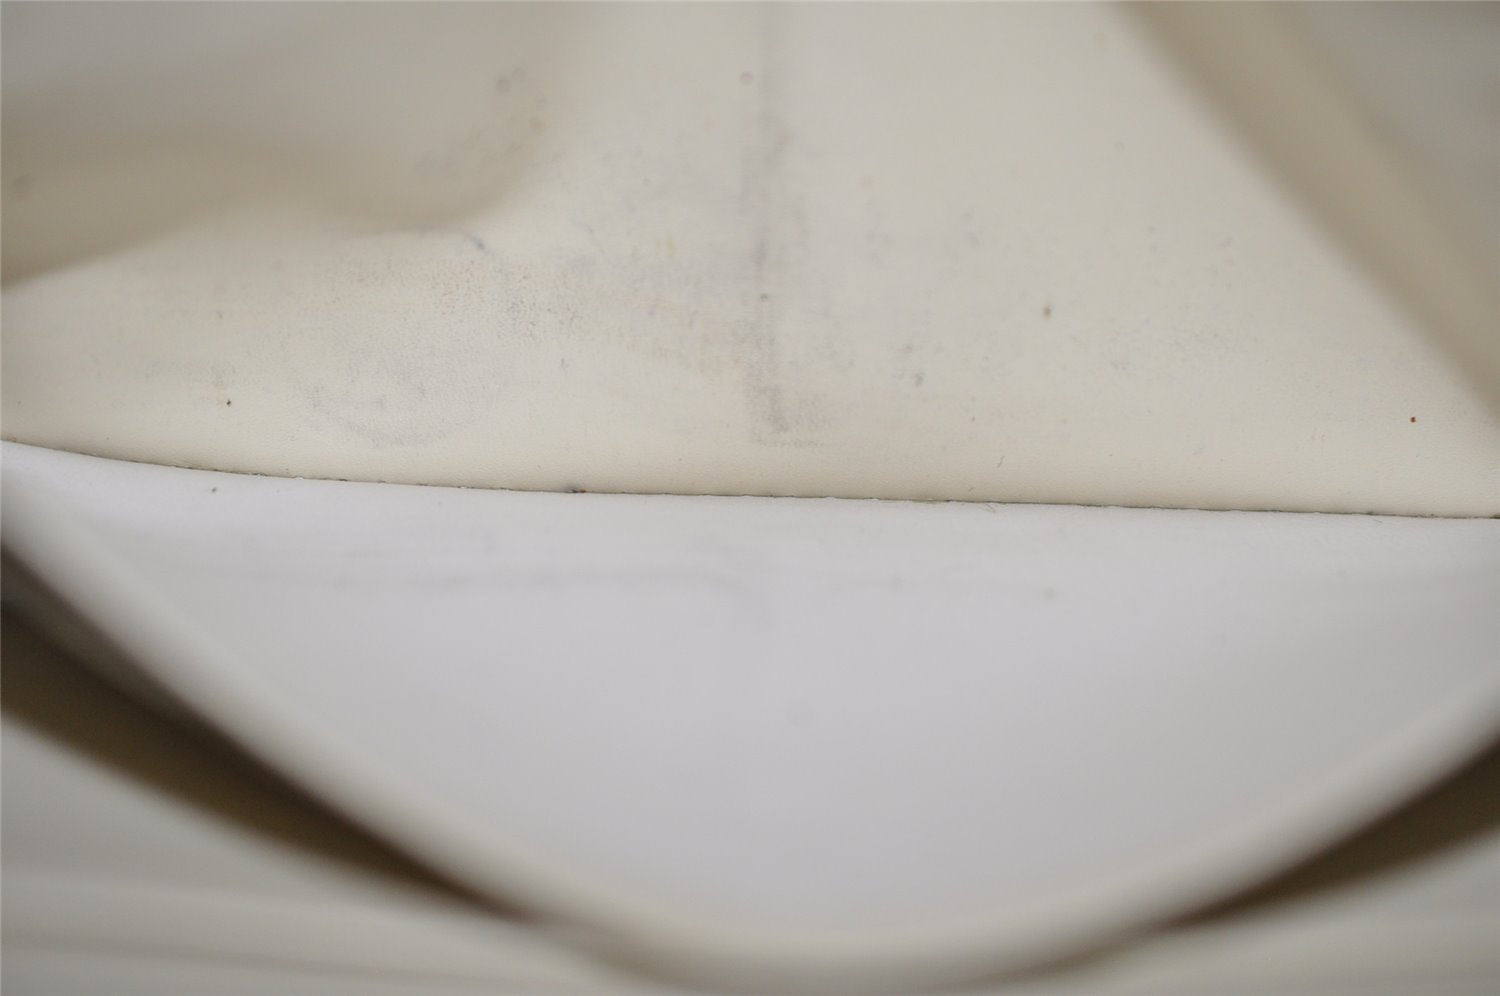 Authentic Louis Vuitton Suhali Zippy Long Wallet Purse White M93026 LV 8666J